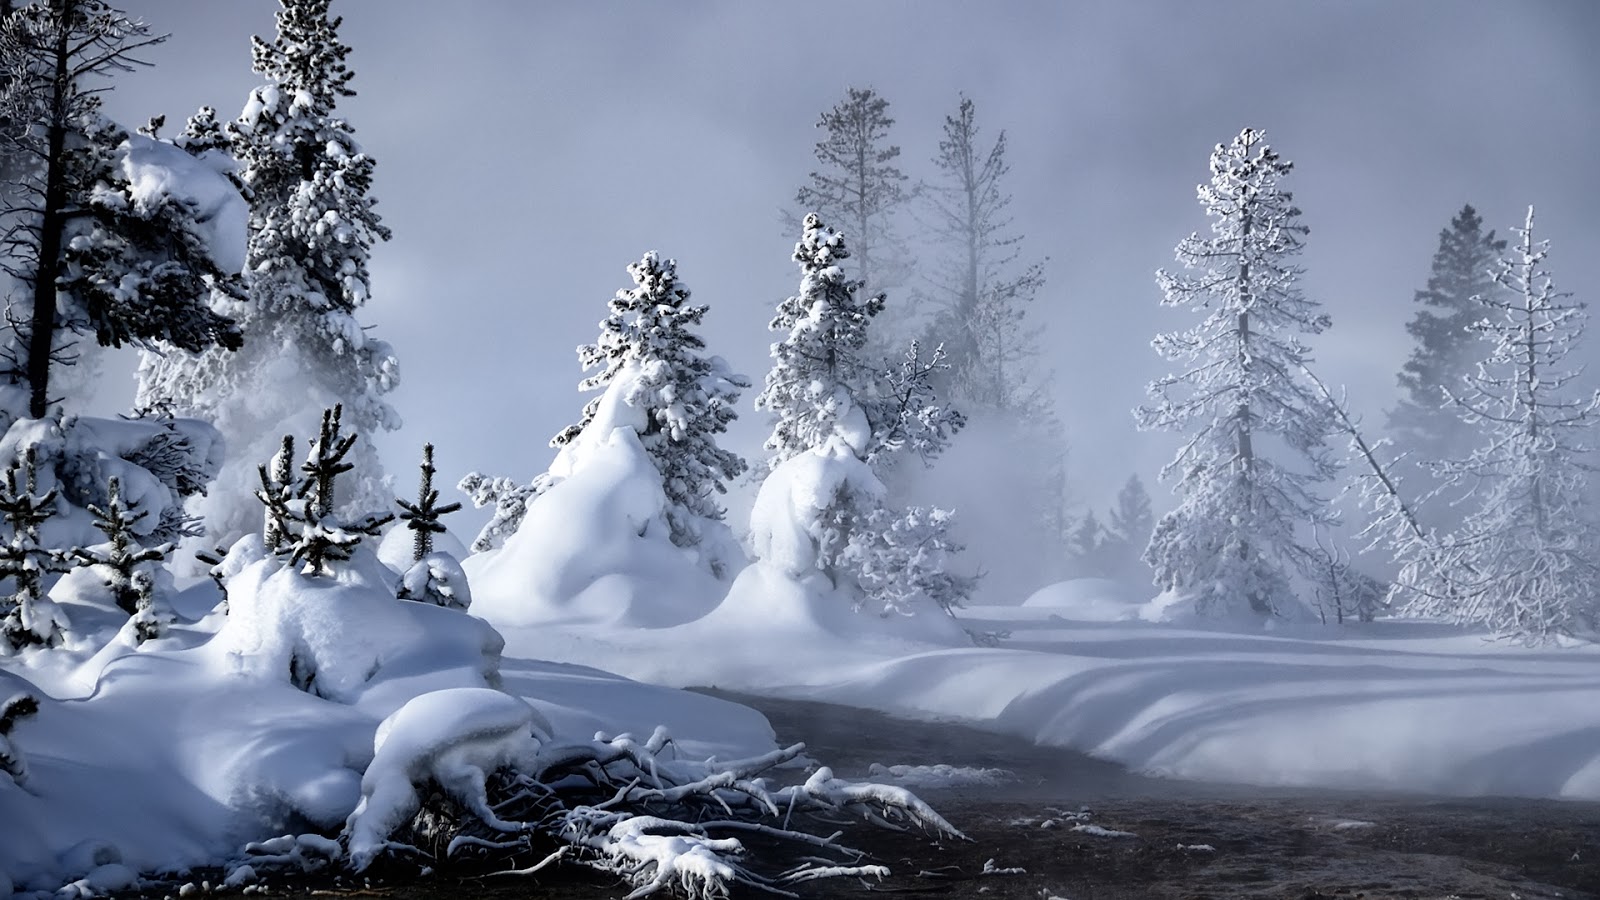 20 fotografías del invierno - Winter free photos - Nieve - Snow